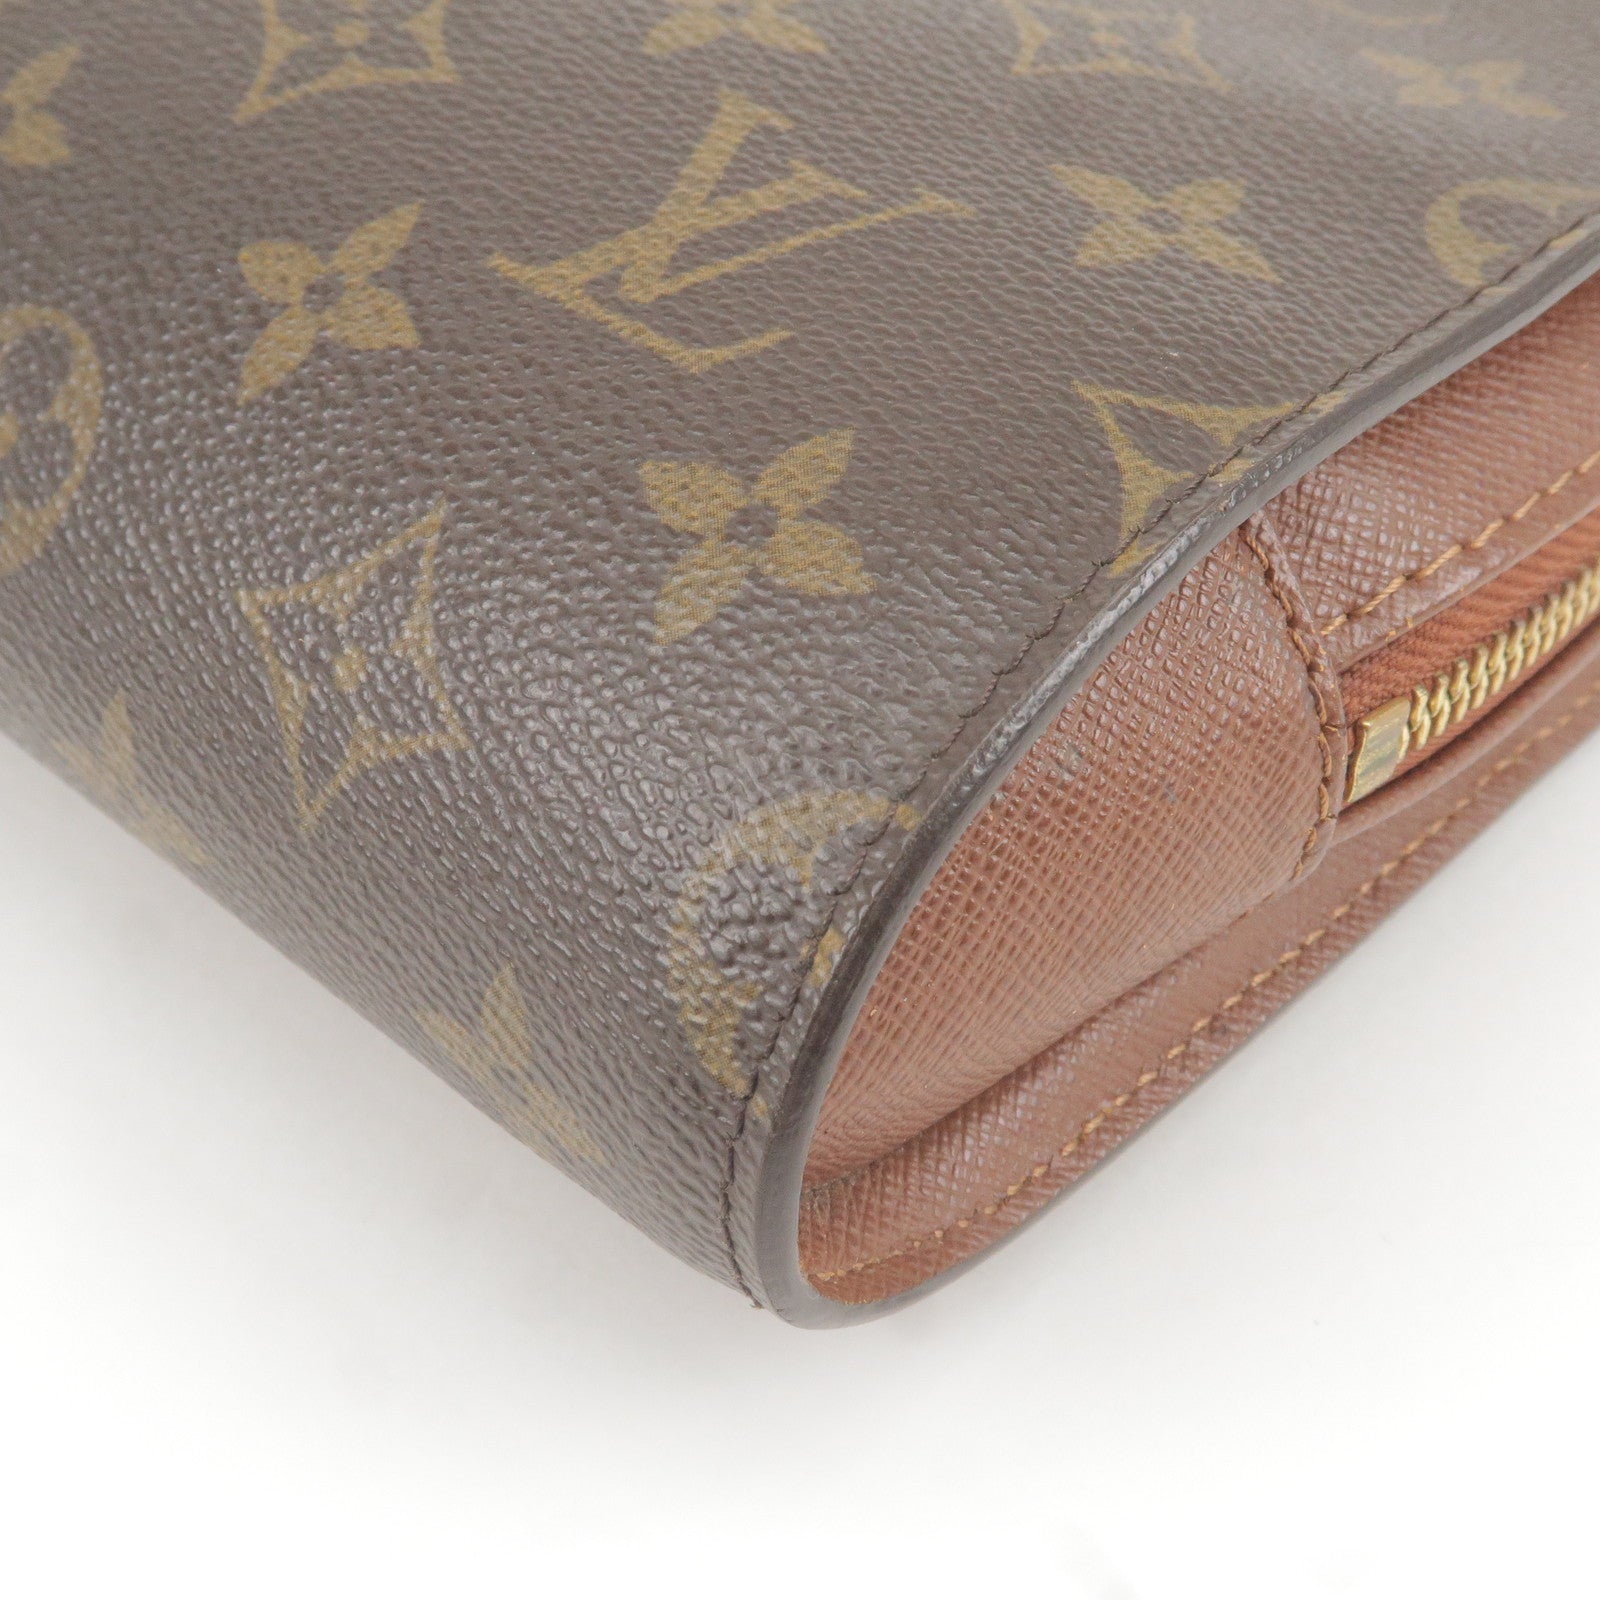 Louis Vuitton Citadine Khaki Canvas Shopper Bag (Pre-Owned)